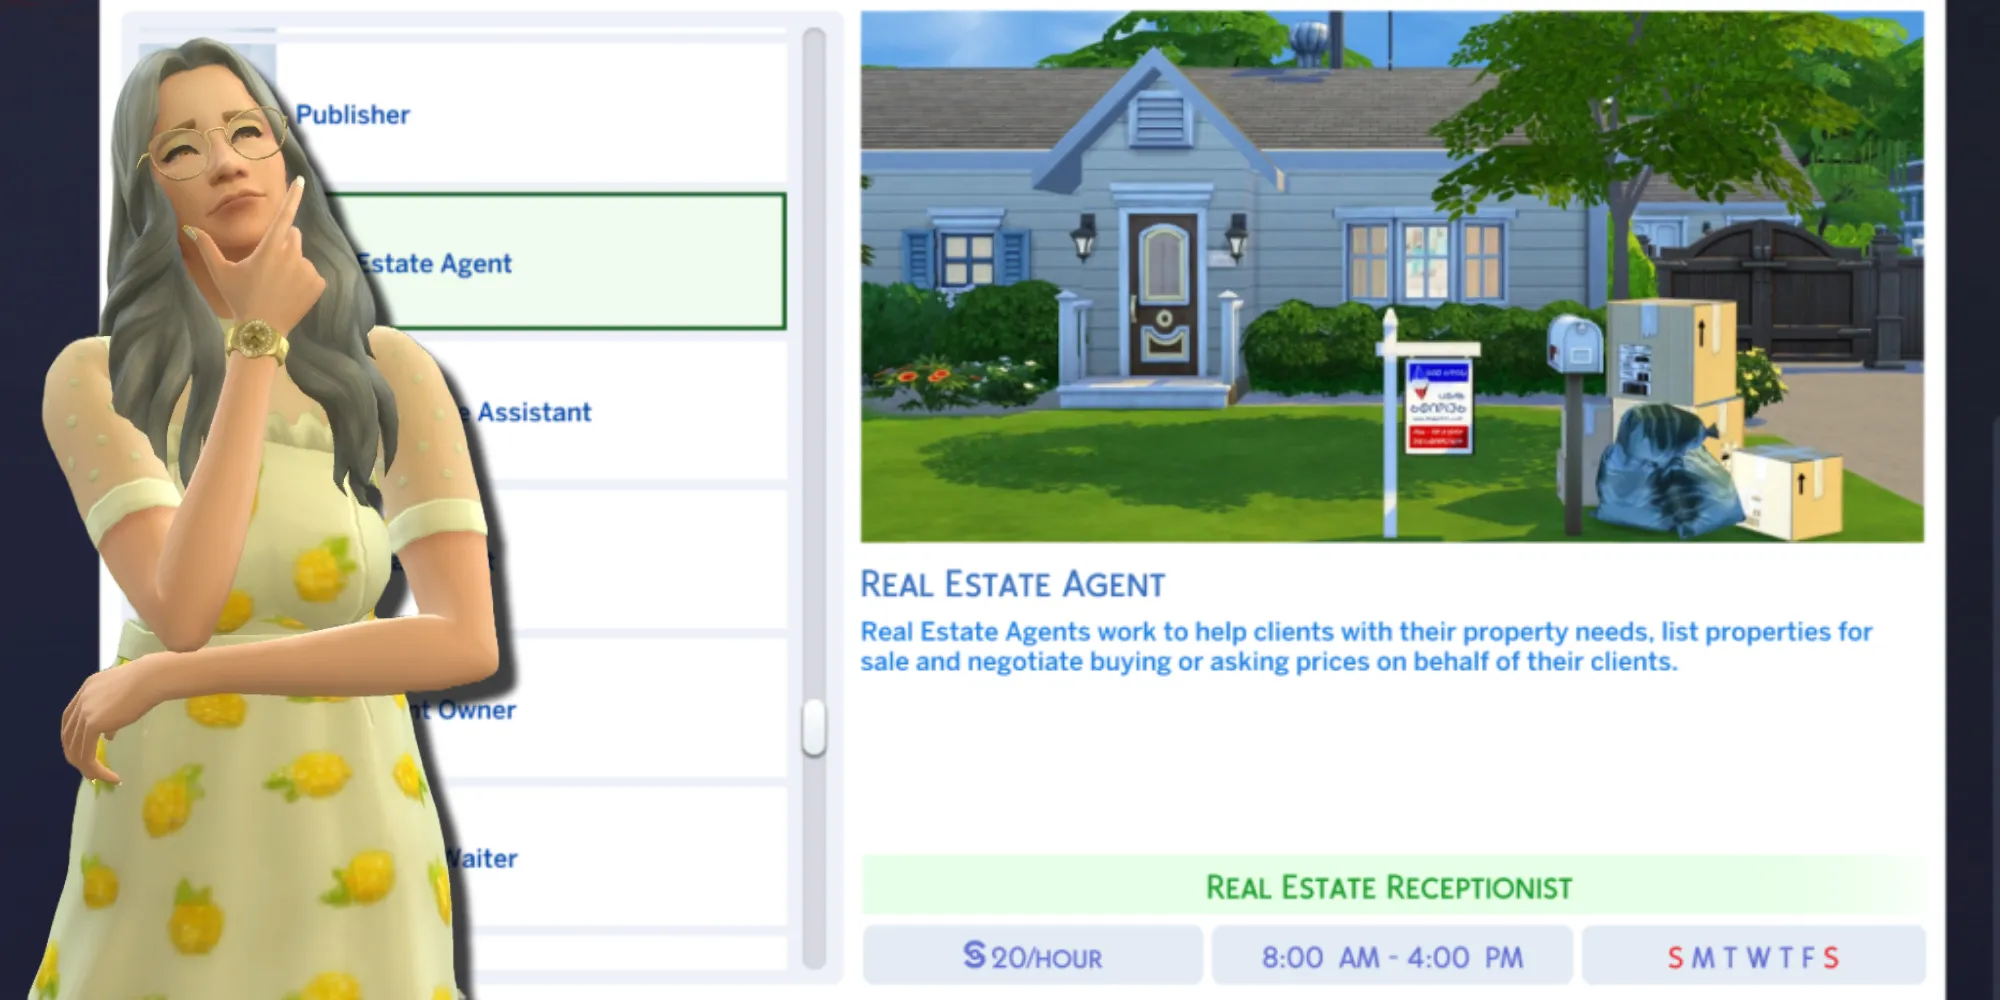 La descrizione del lavoro per la mod di carriera di agente immobiliare per The Sims 4 e un Sim che sta pensando di unirsi alla carriera come receptionist